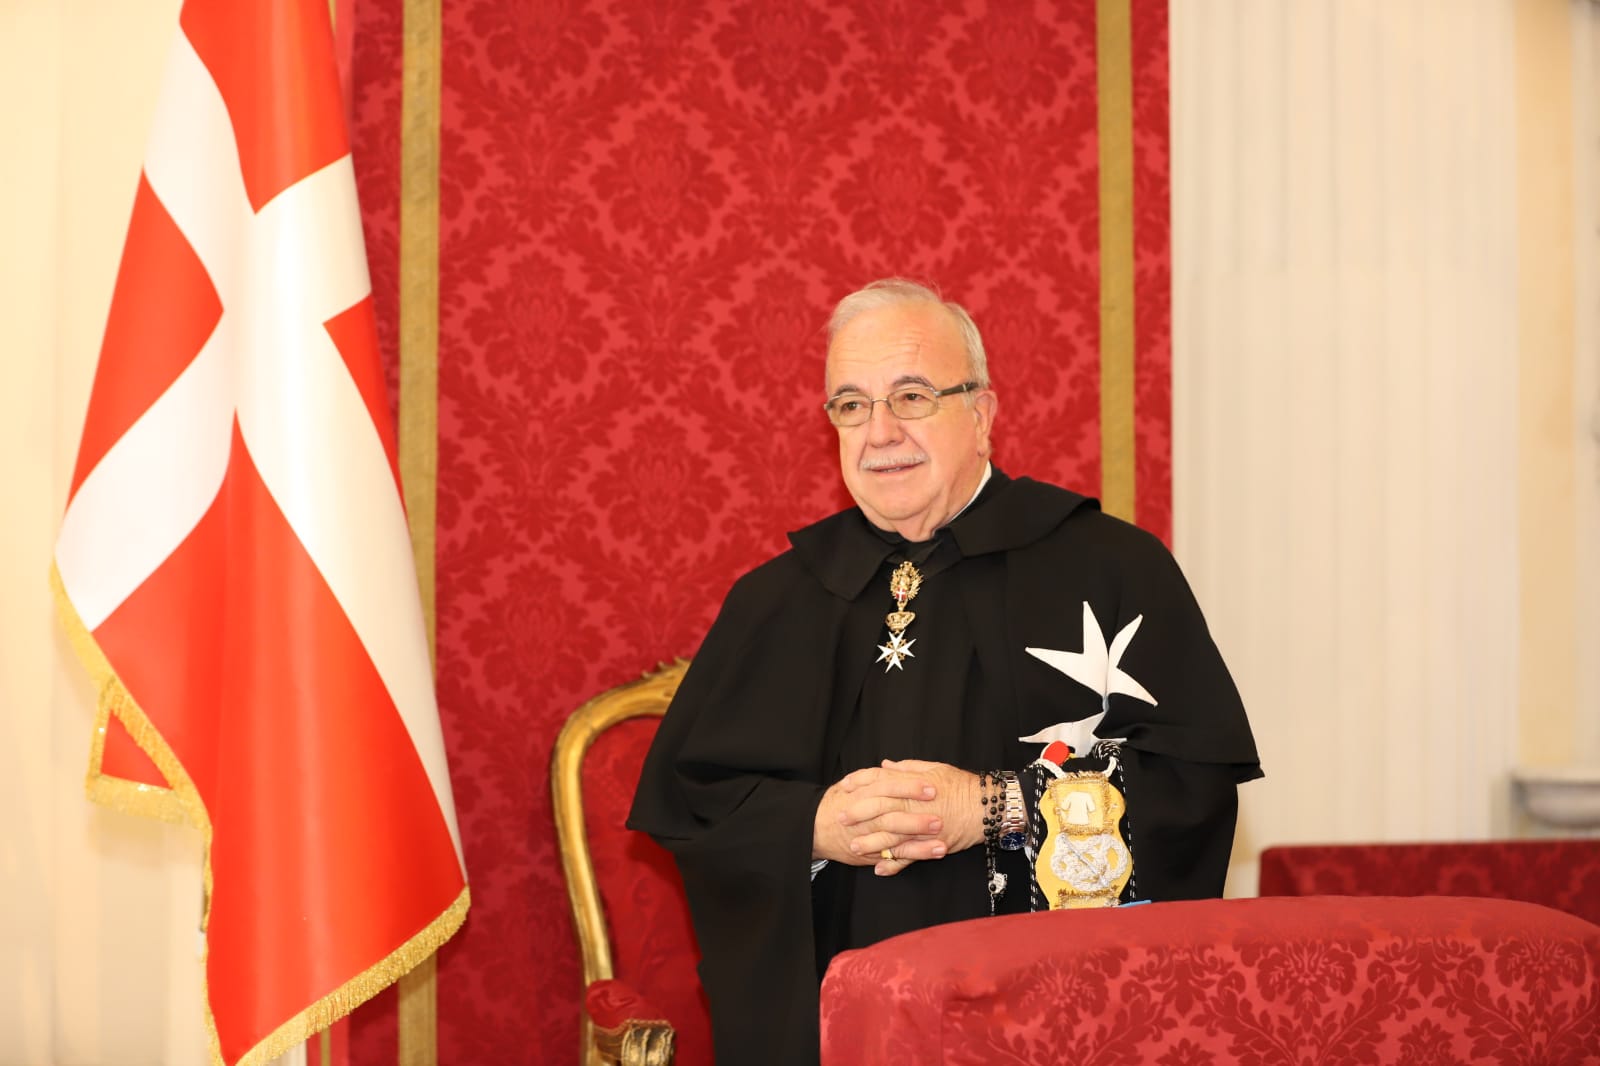 Fra’ Marco Luzzago eletto Luogotenente di Gran Maestro del Sovrano Ordine Di Malta